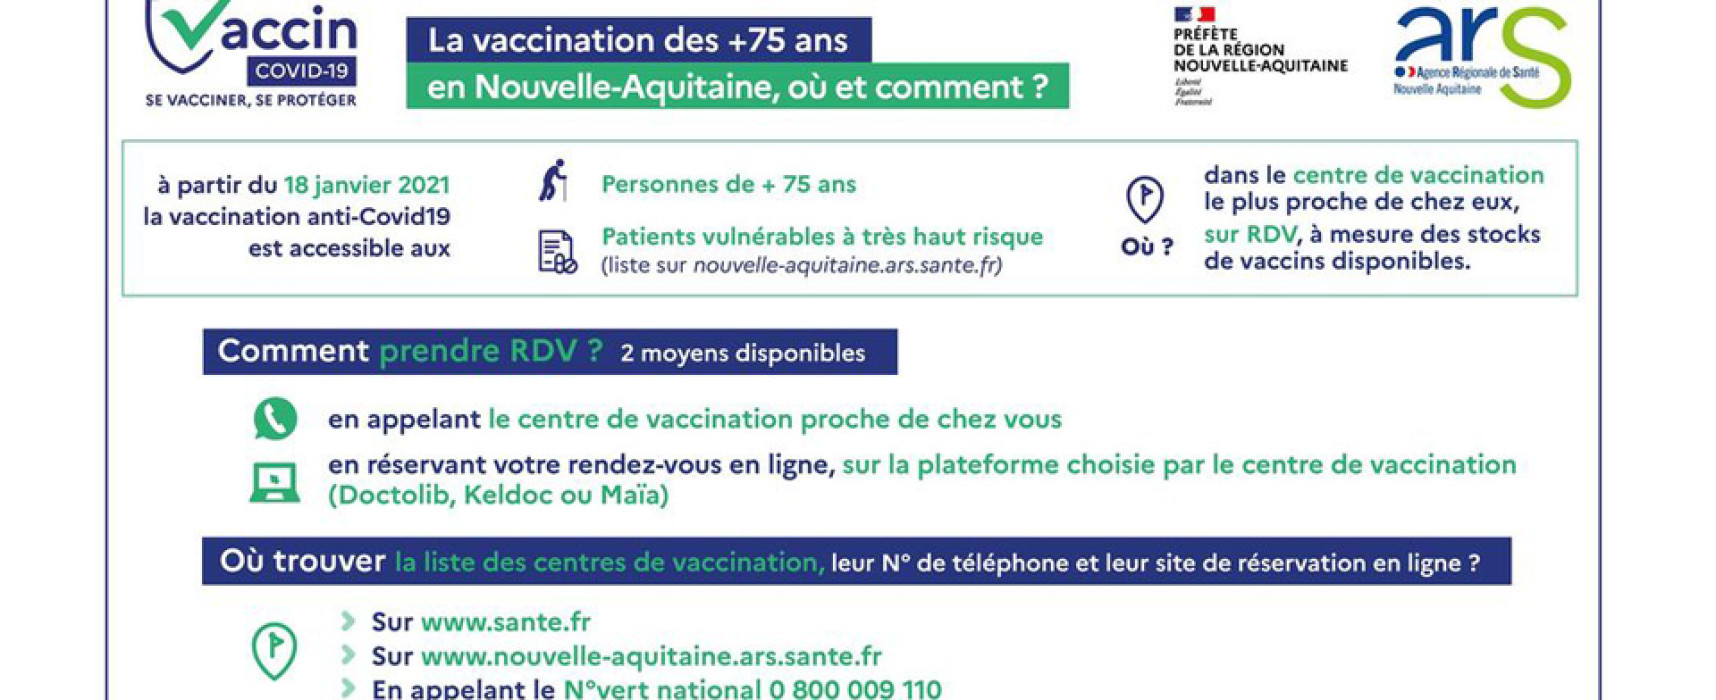 La vaccination anti-Covid19 des personnes de + 75 ans débutera le 18 janvier 2021